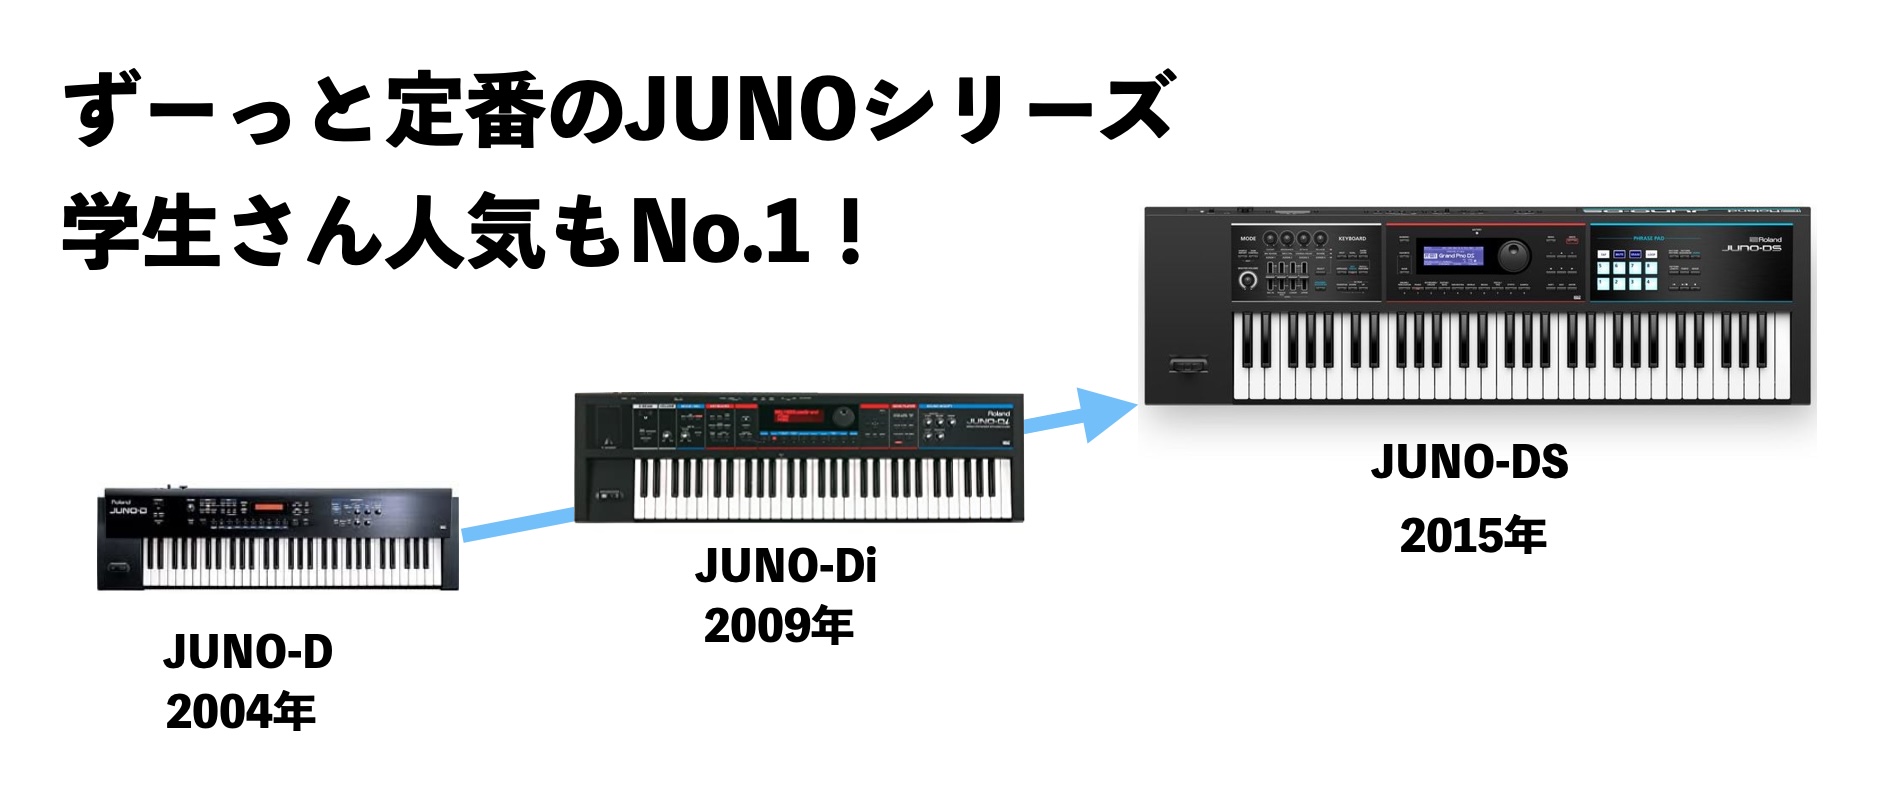 人気SALE安い[良品] Roland JUNO-Gi 61鍵盤シンセサイザー/旧型でもまだまだ十分に使えます！ [PI376] ローランド